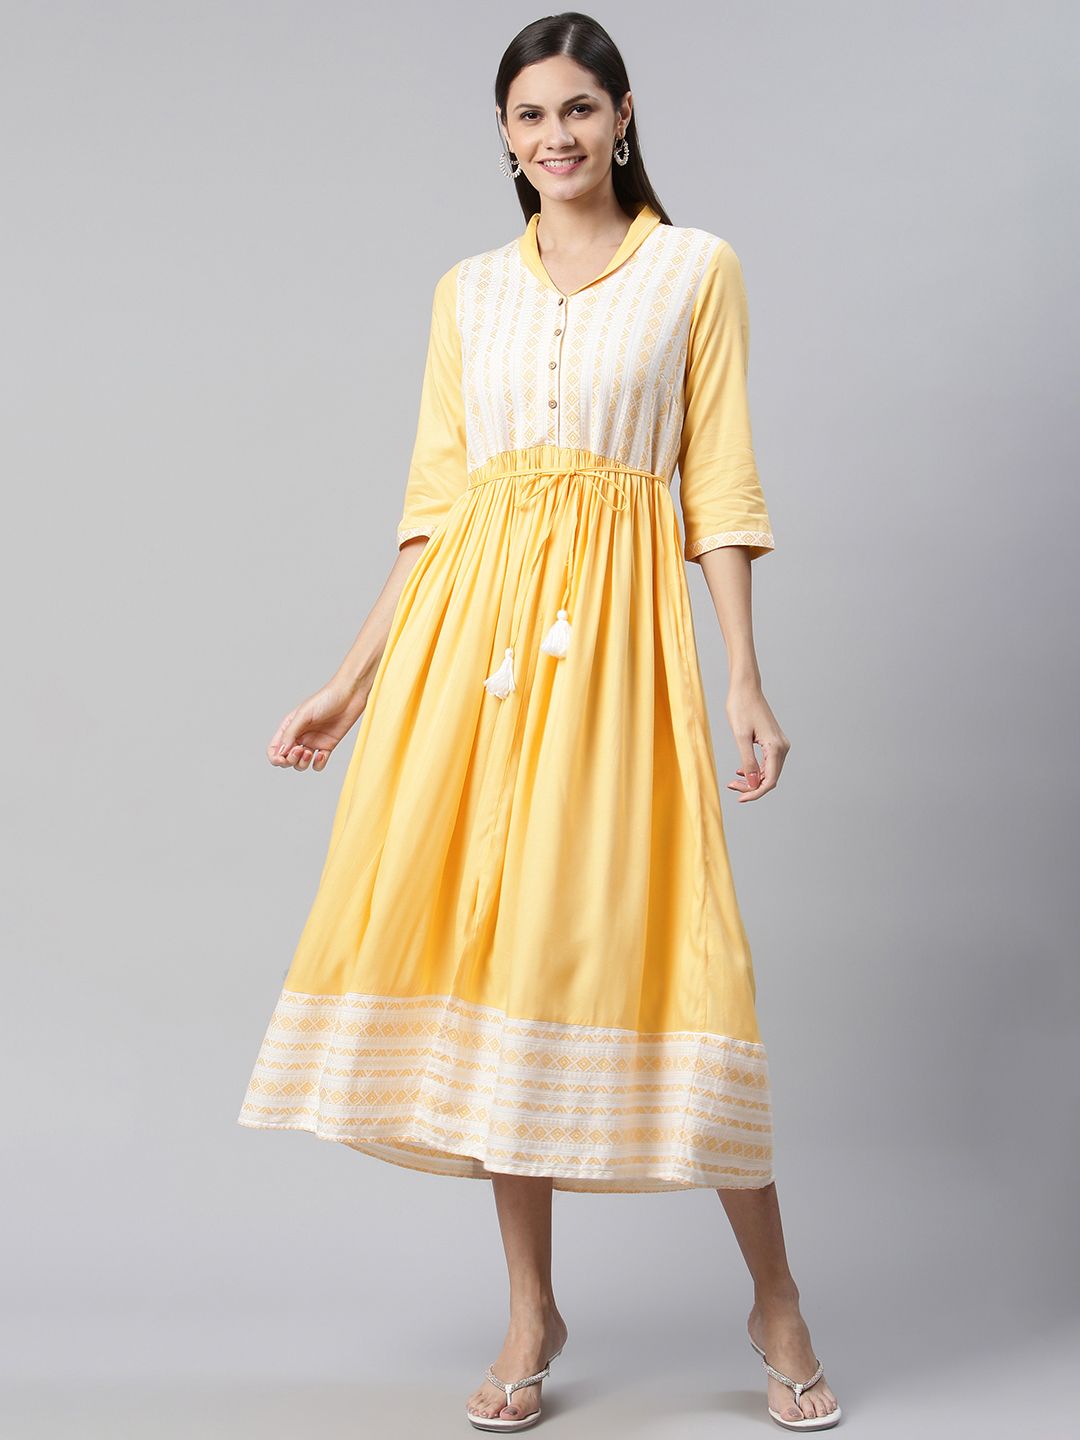 AURELIA Yellow & White Yoke Design Cotton Maxi Ethnic Dress Price in India